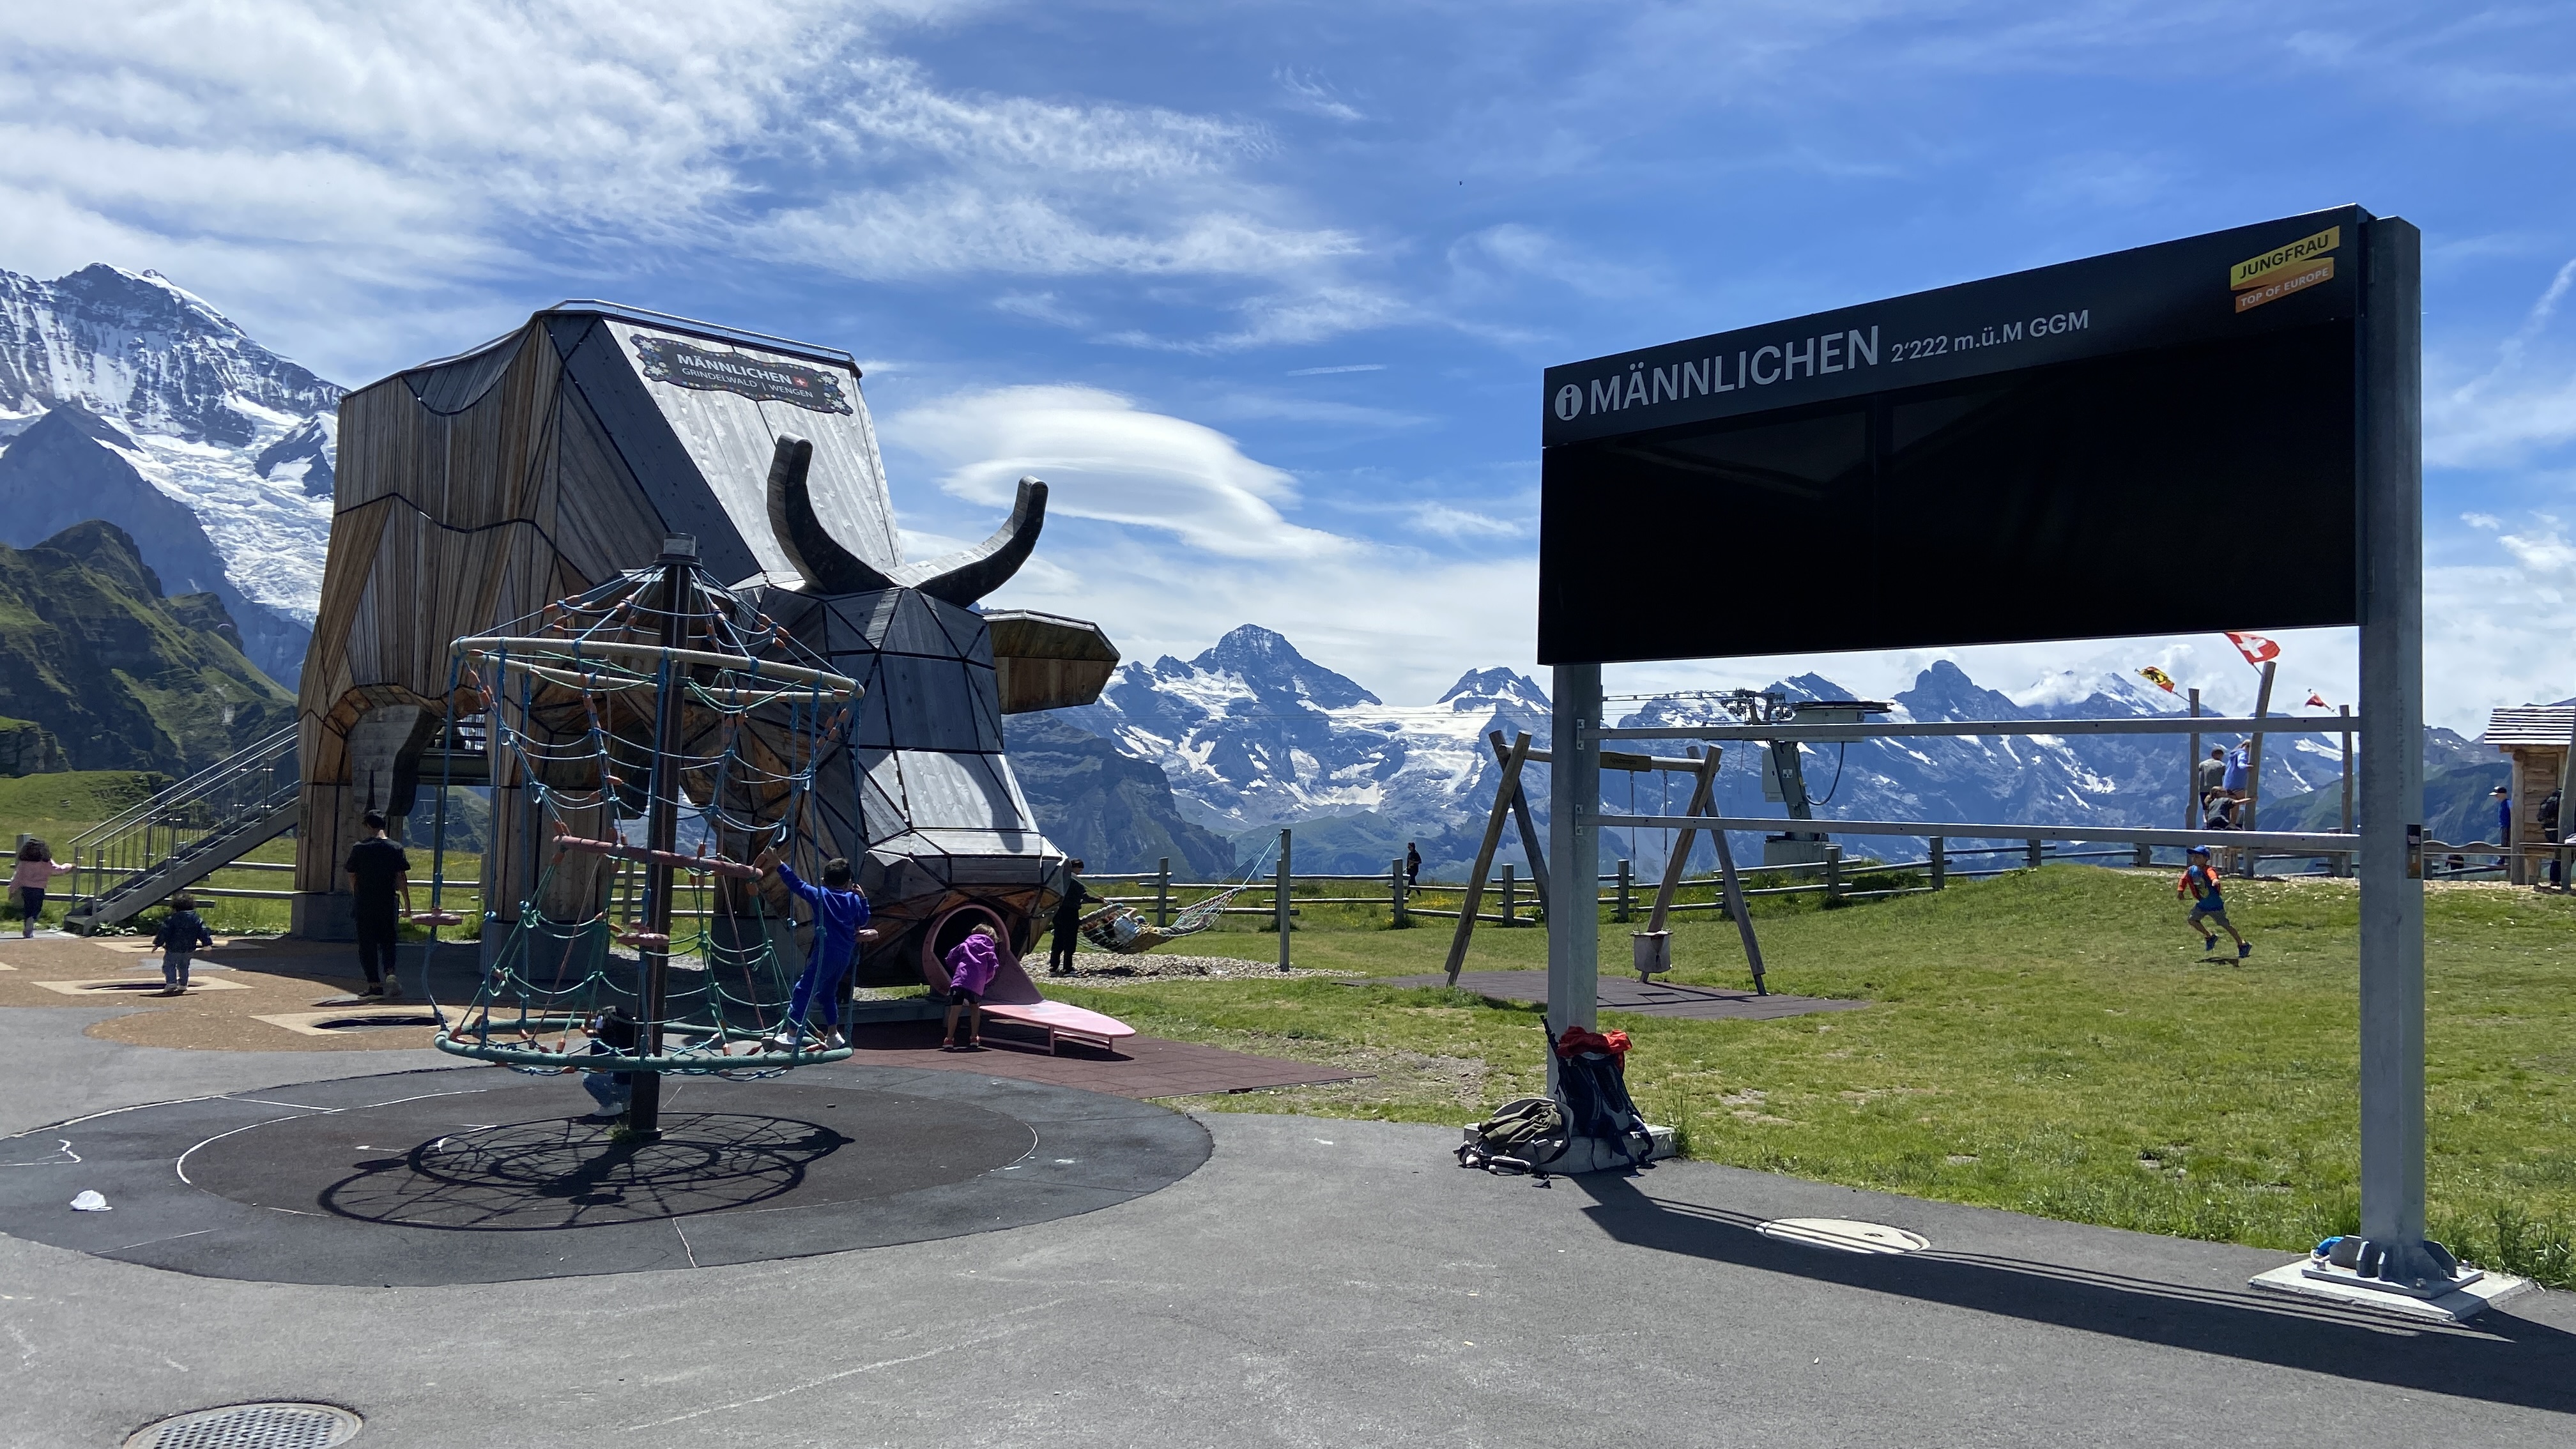 Mannlichen playground above Lauterbrunnen Valley and Grindelwald Switzerland